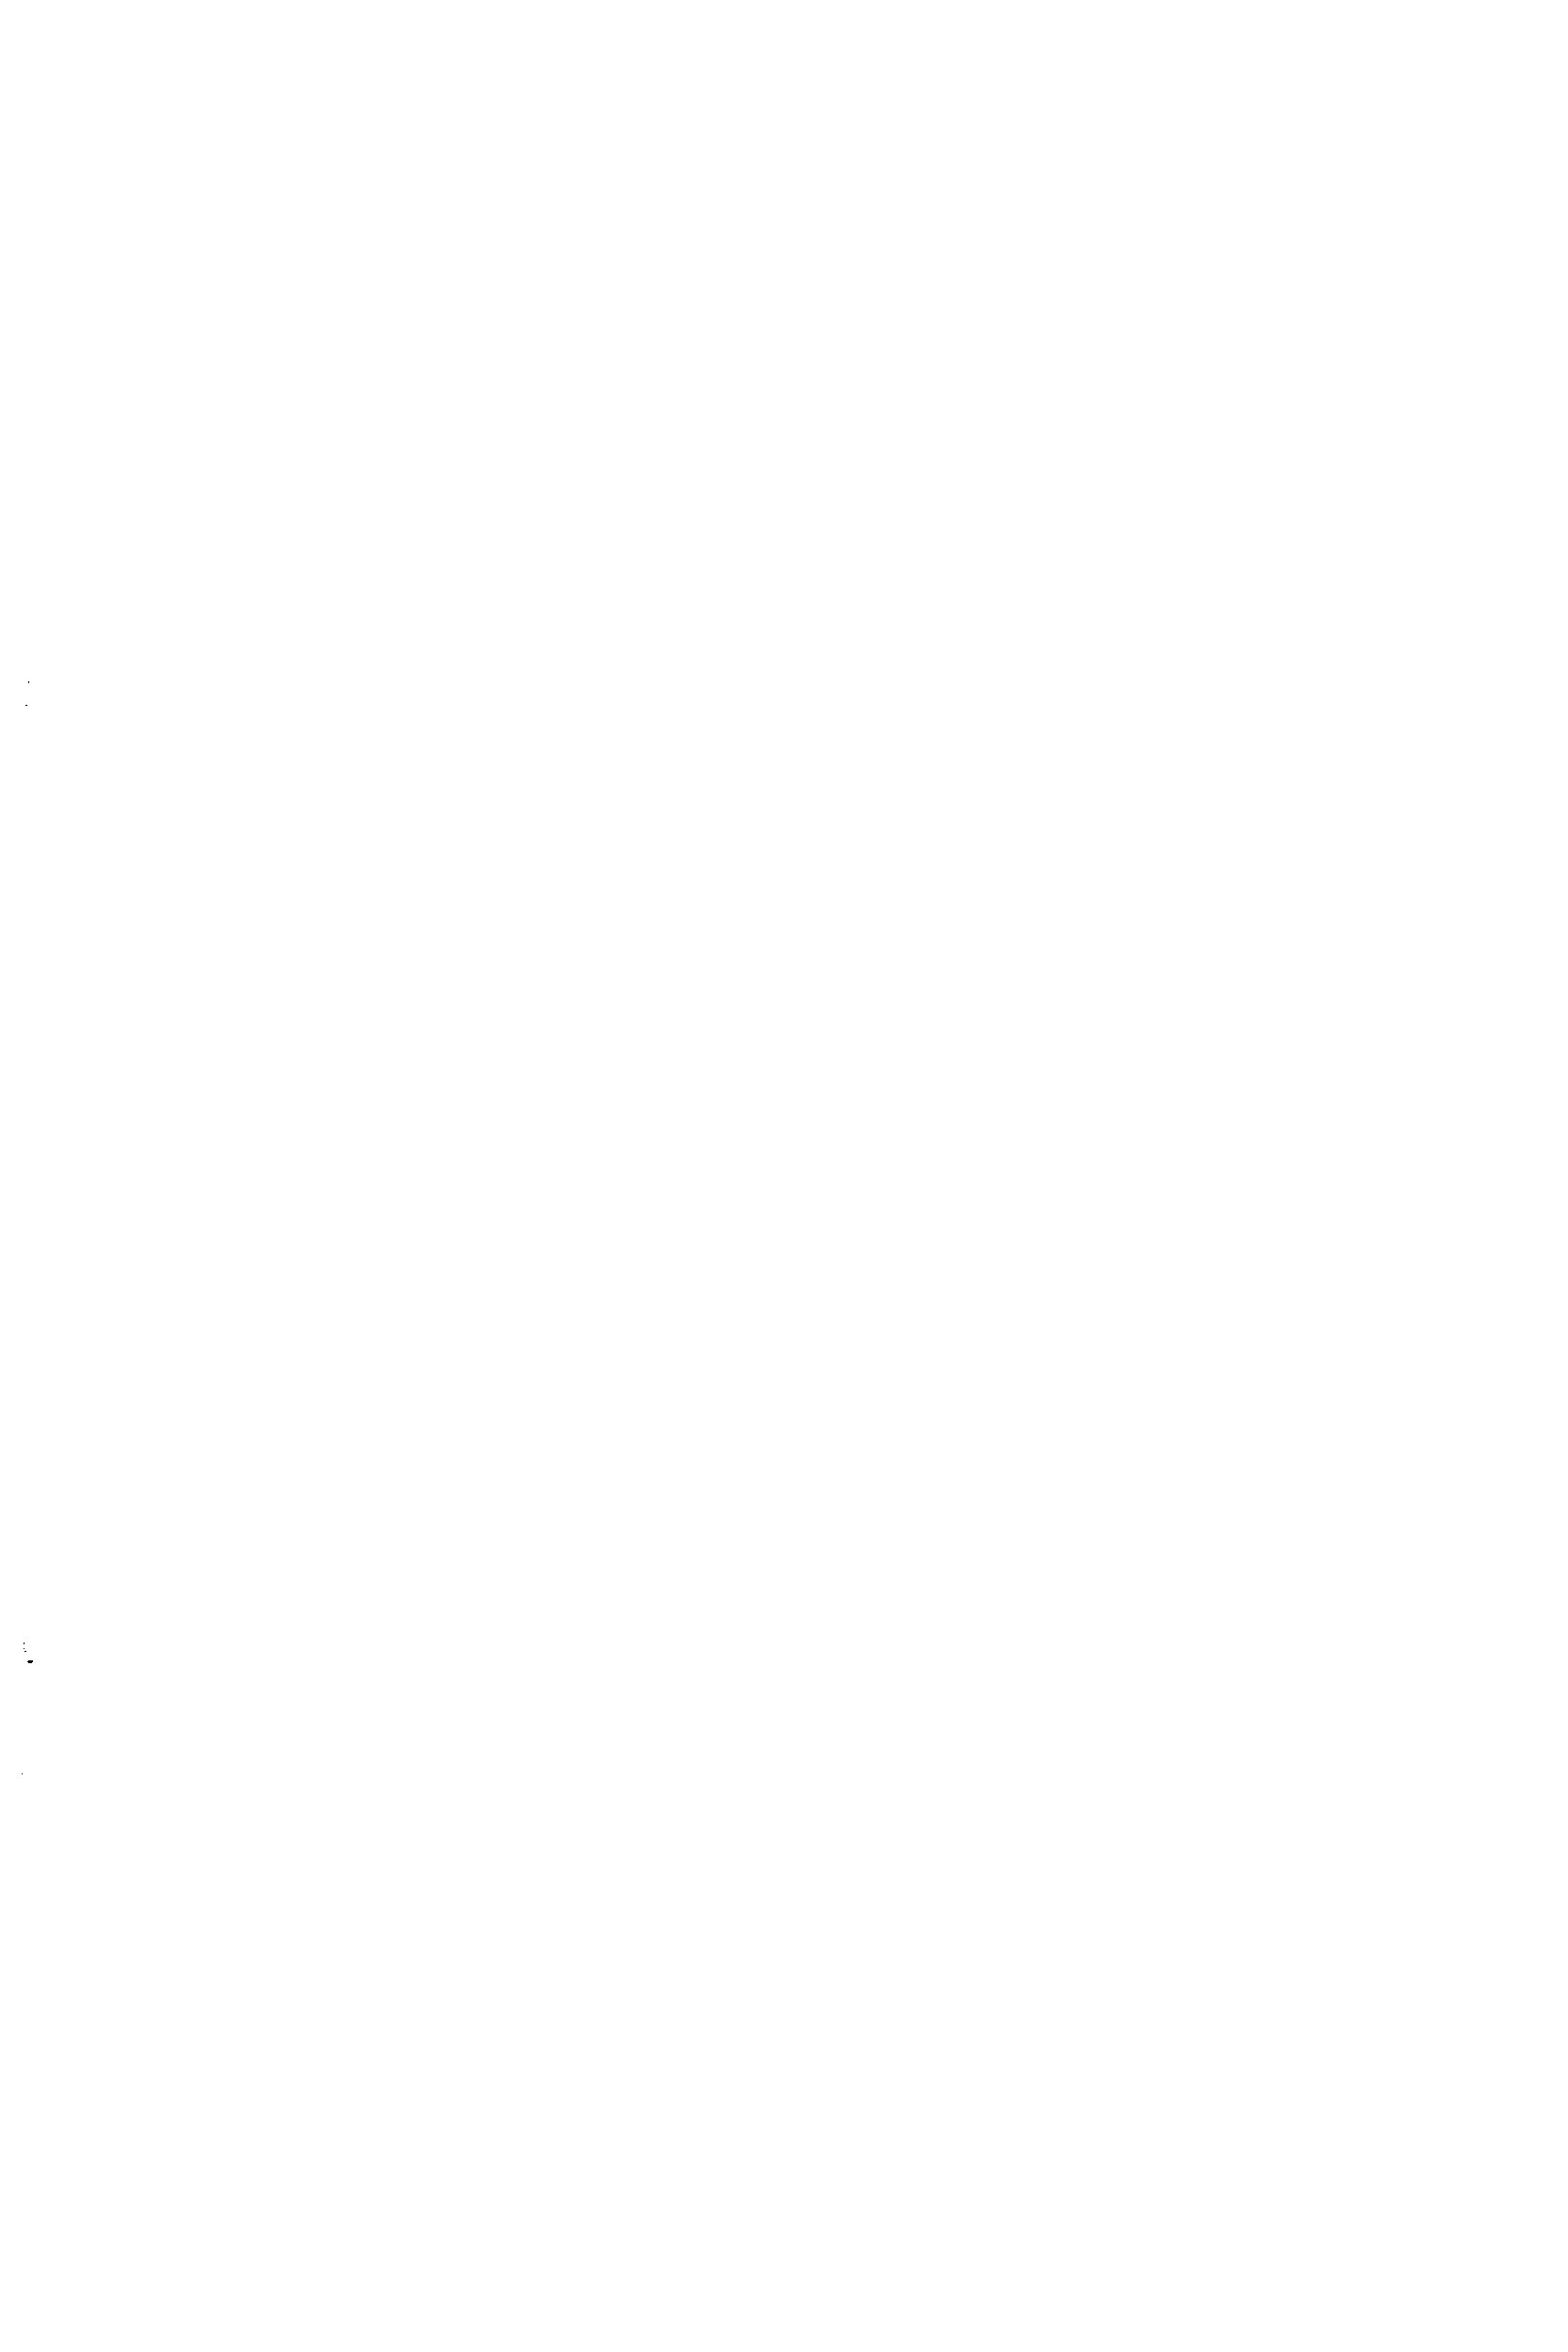 Фиг. 53. Ячейка для демонстрации восстановительного растворения окиси железа (М. И. Прайэр, Ю. Р. Эванс) 
